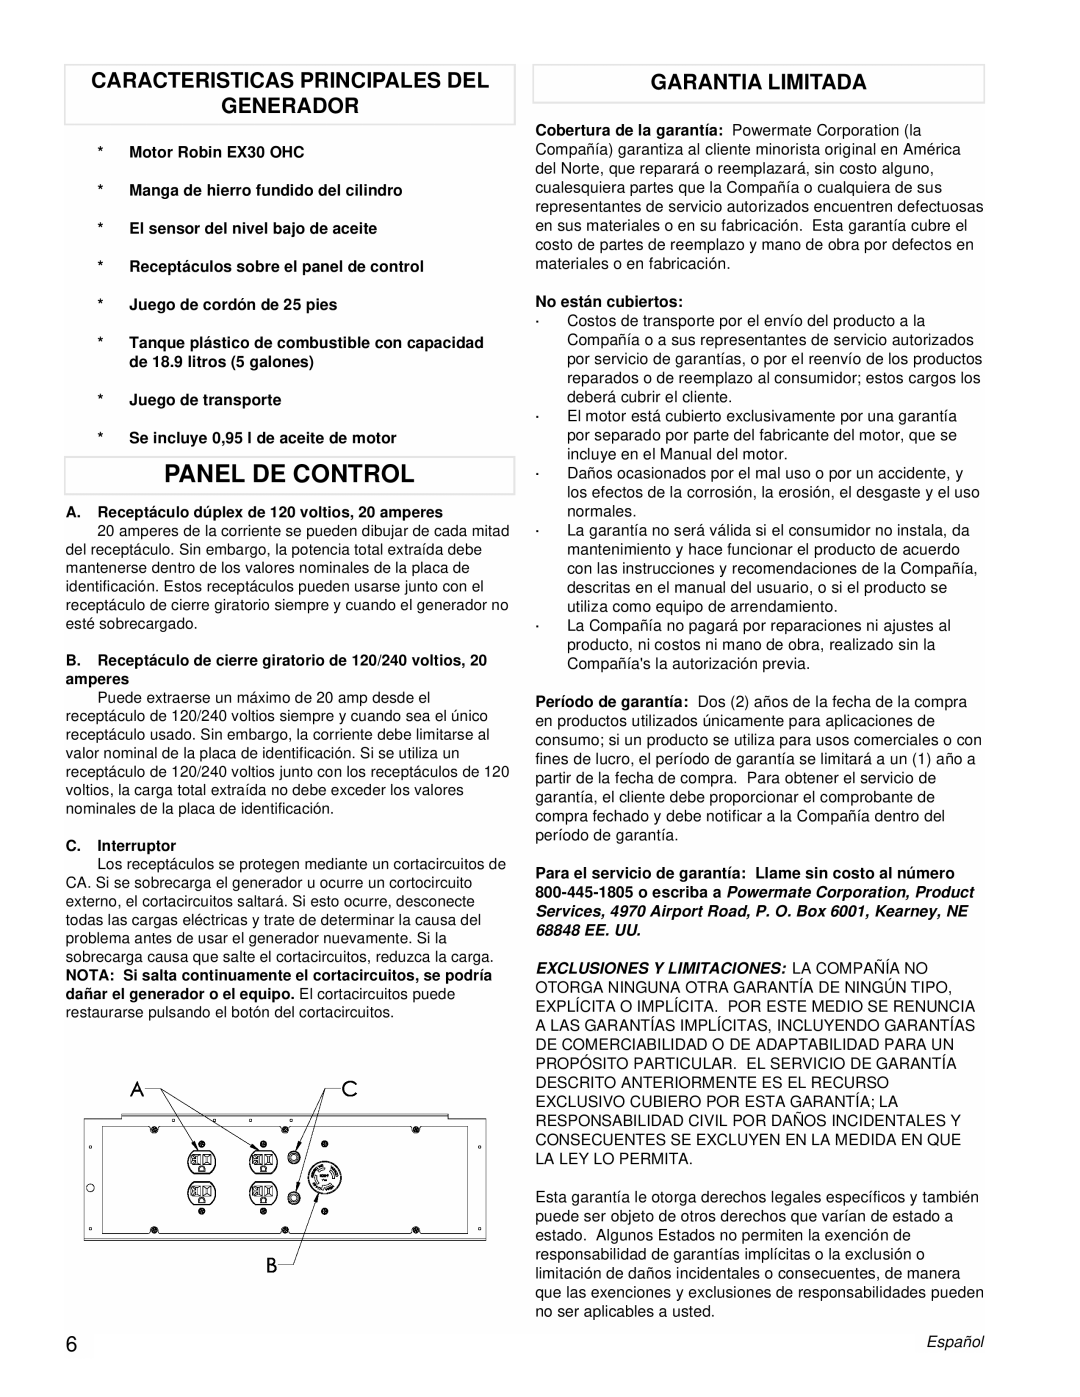 Powermate PM0435253 manual Panel De Control, Caracteristicas Principales Del Generador, Garantia Limitada 